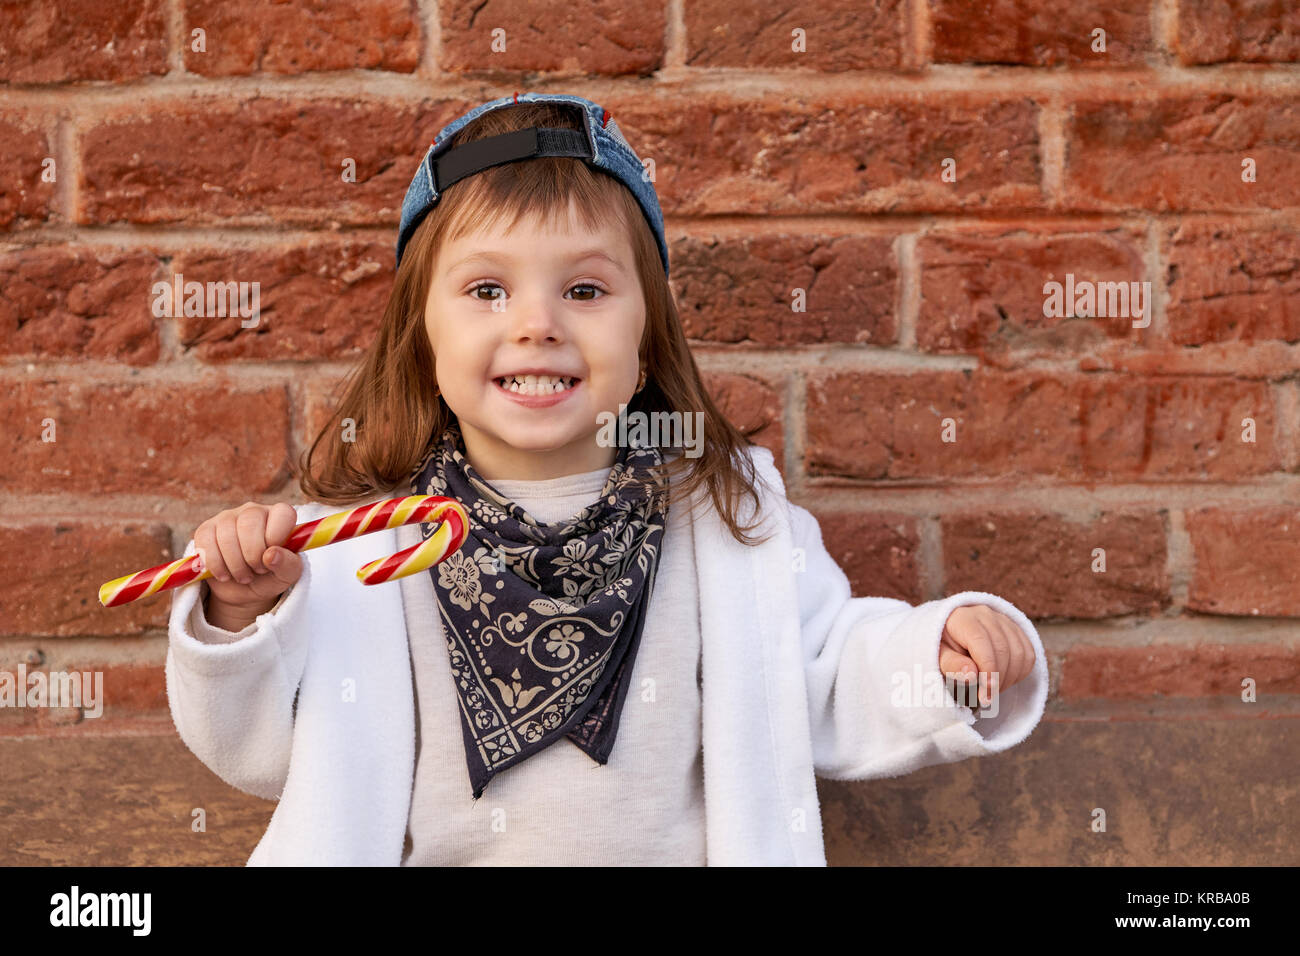 Schöne niedliche Kind Süßigkeiten essen. Portrait von niedlichen kleinen Mädchen im Baseball Cap Stockfoto